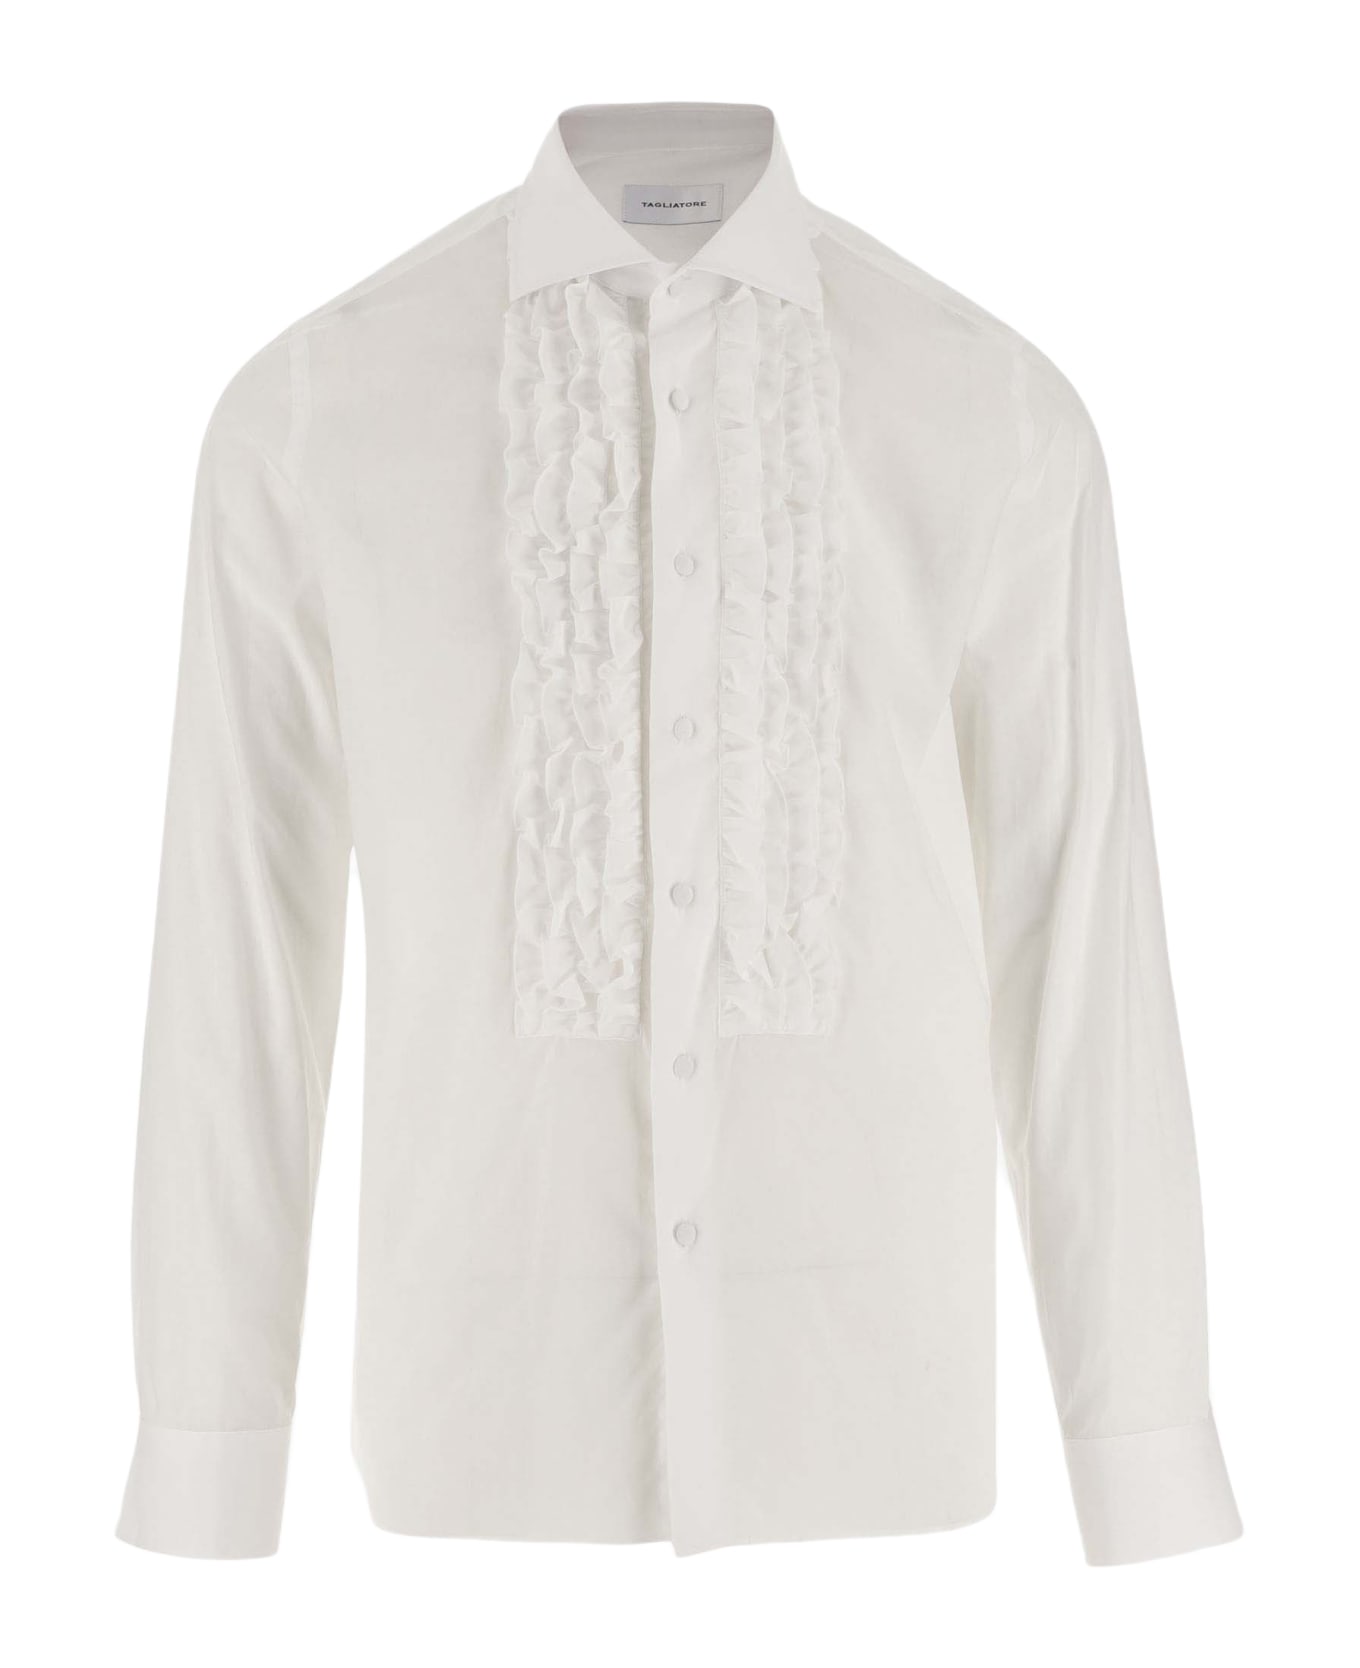 Tagliatore Cotton Poplin Shirt With Ruffles - MULTICOLOR